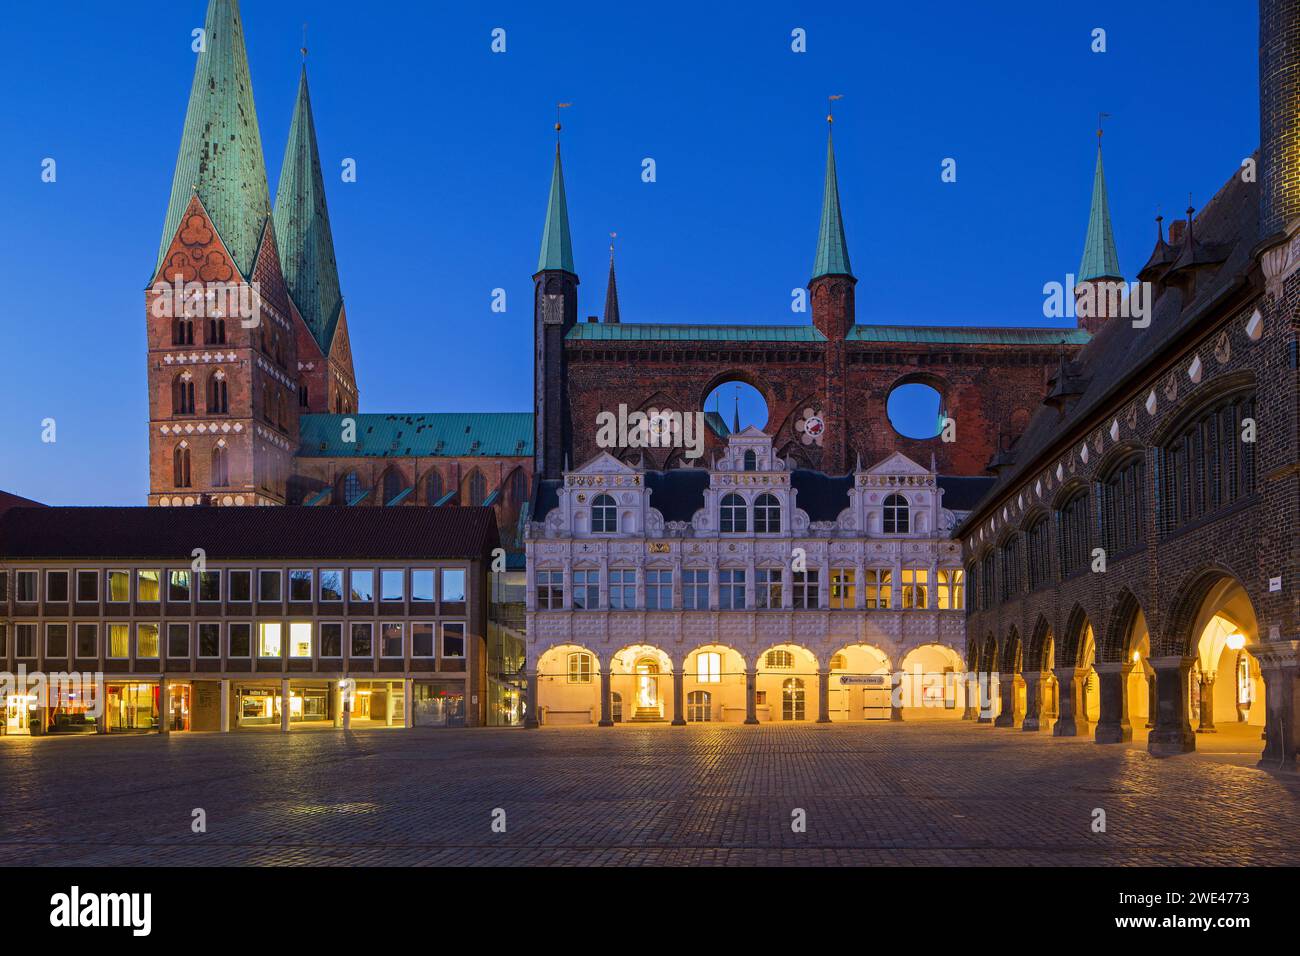 Municipio / municipio in mattoni gotici e mercato illuminato di notte nella città anseatica di Lübeck / Lubecca, Schleswig-Holstein, Germania Foto Stock